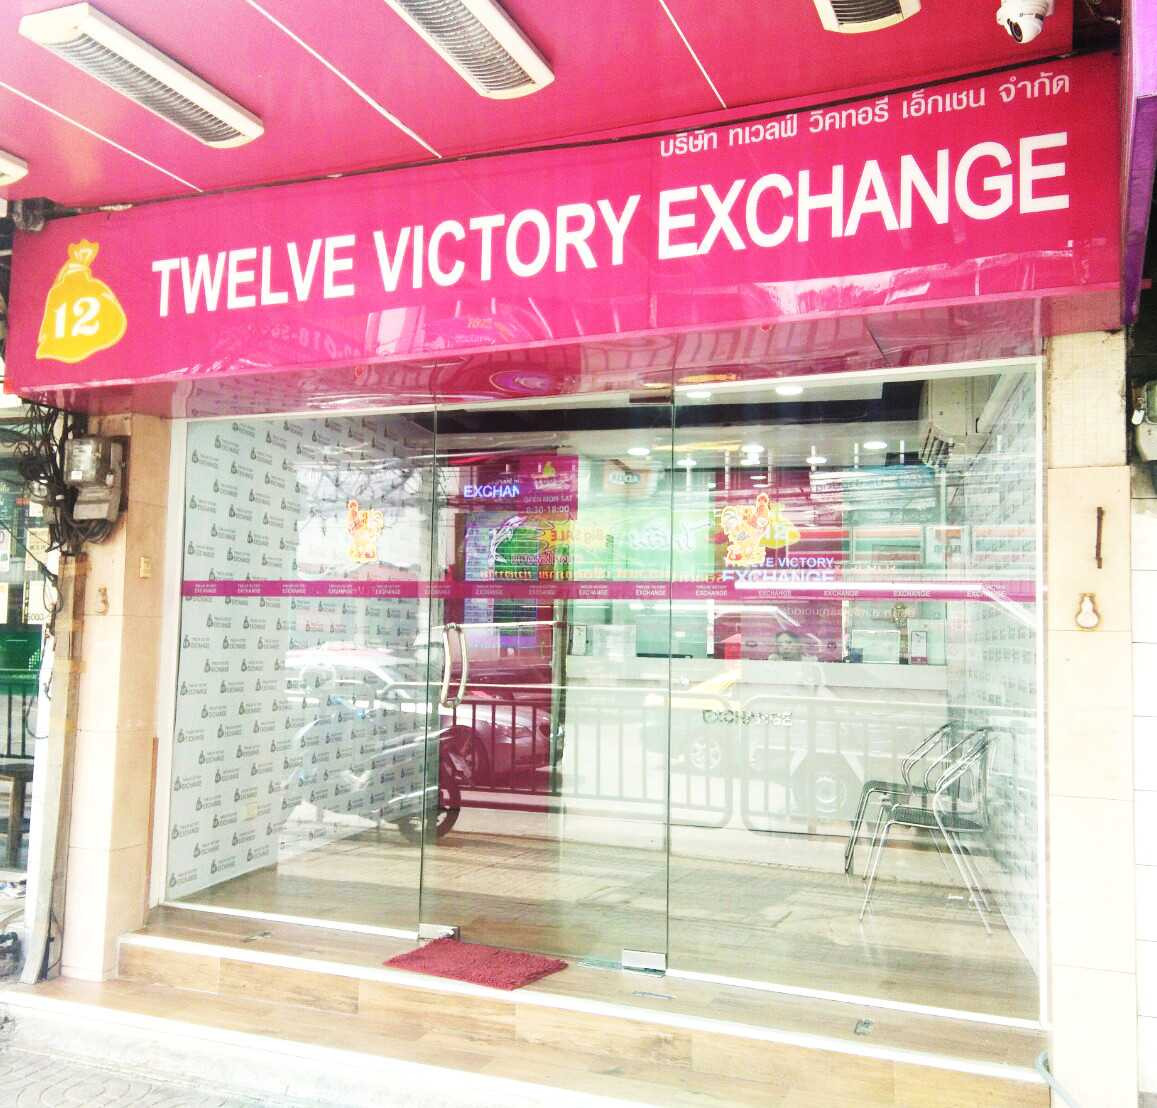 Twelve Victory Exchange